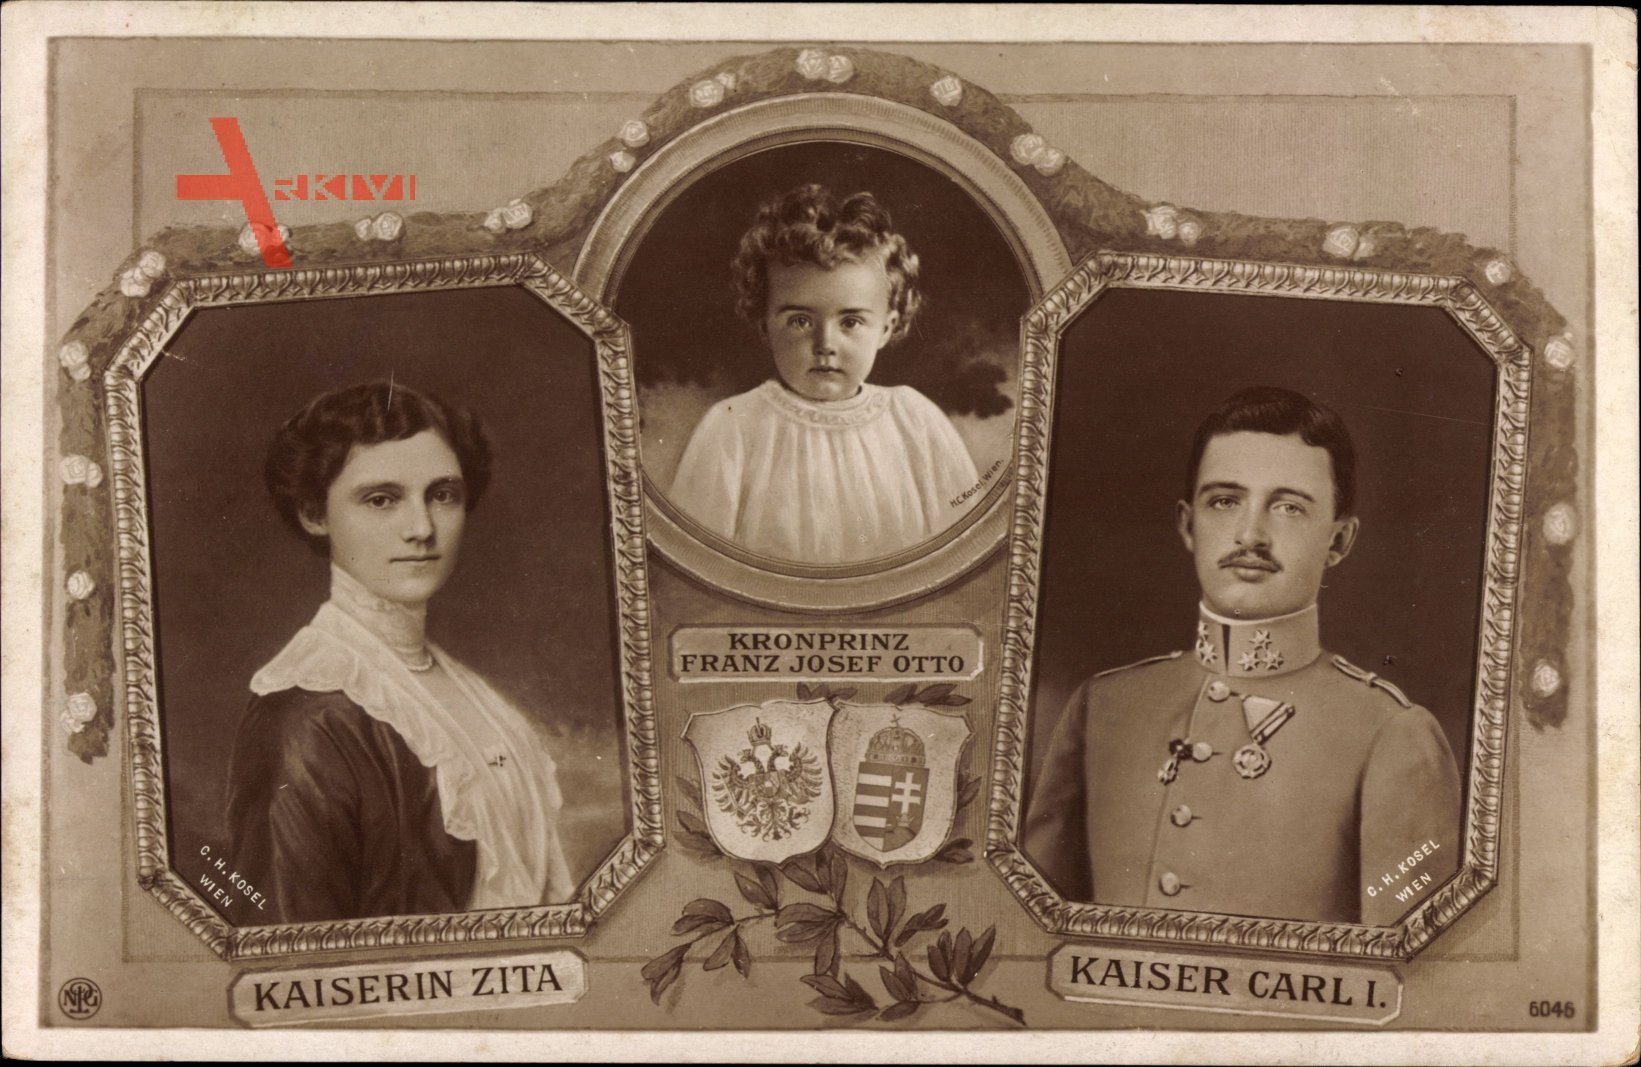 Kaiser Karl I. von Österreich Ungarn,Kaiserin Zita,Kronprinz Franz Josef Otto